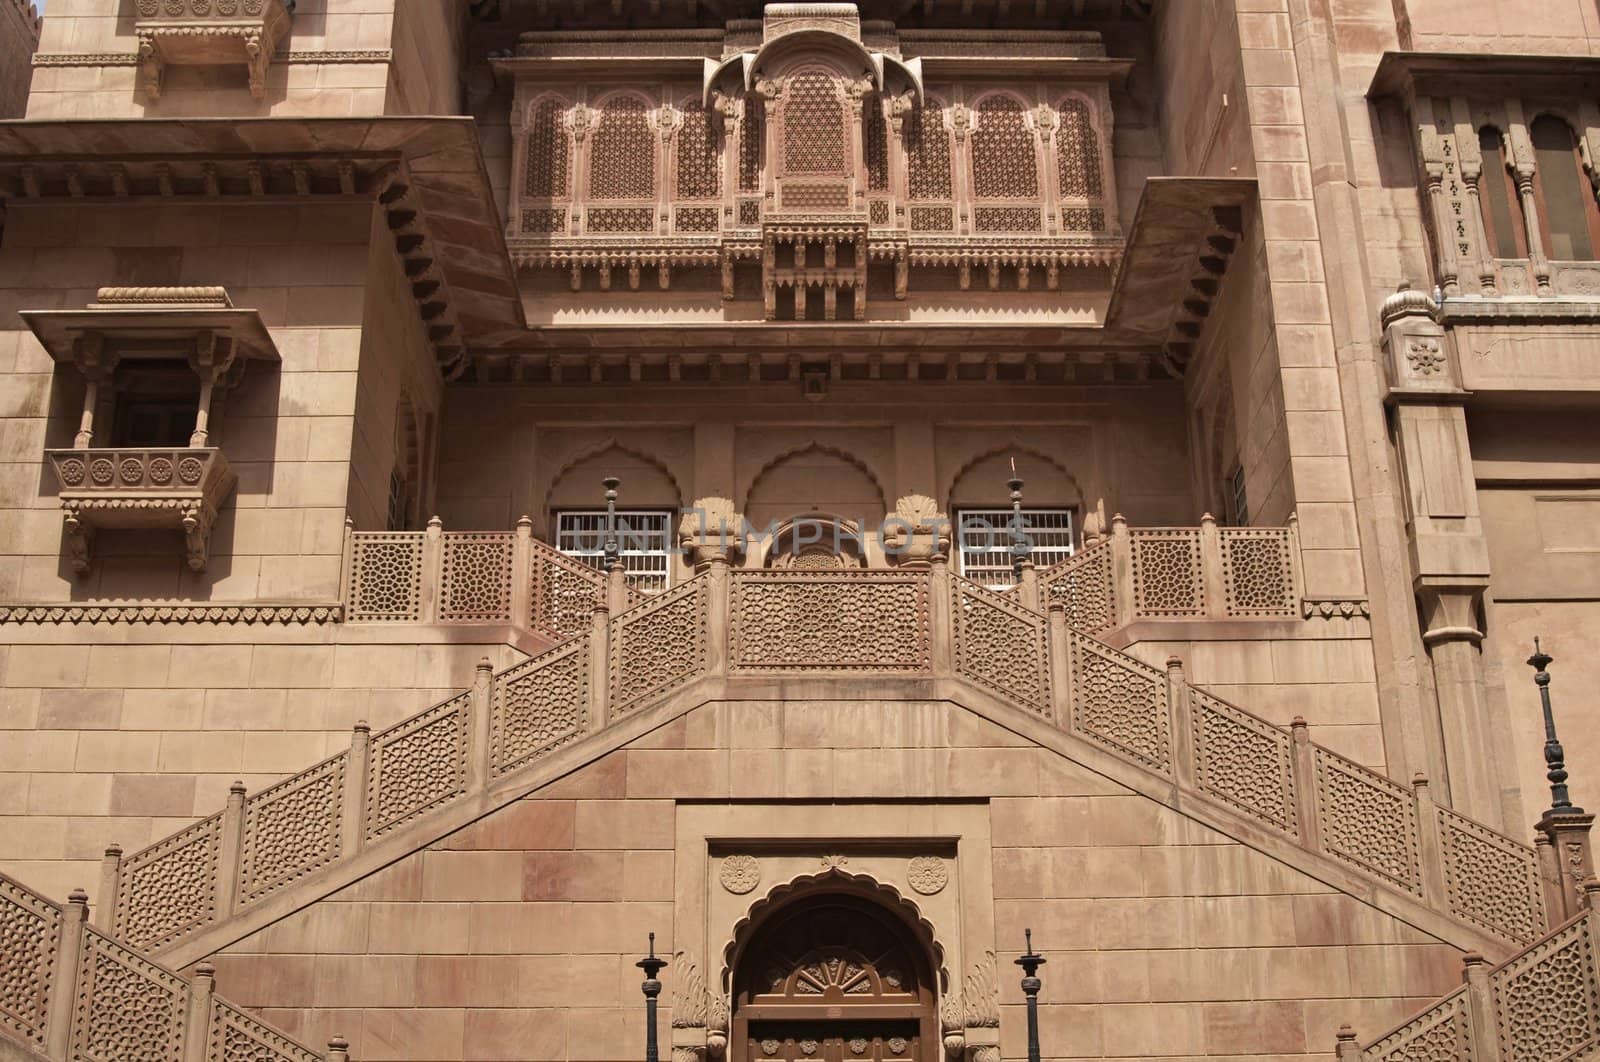 Entrance to Indian Palace by JeremyRichards